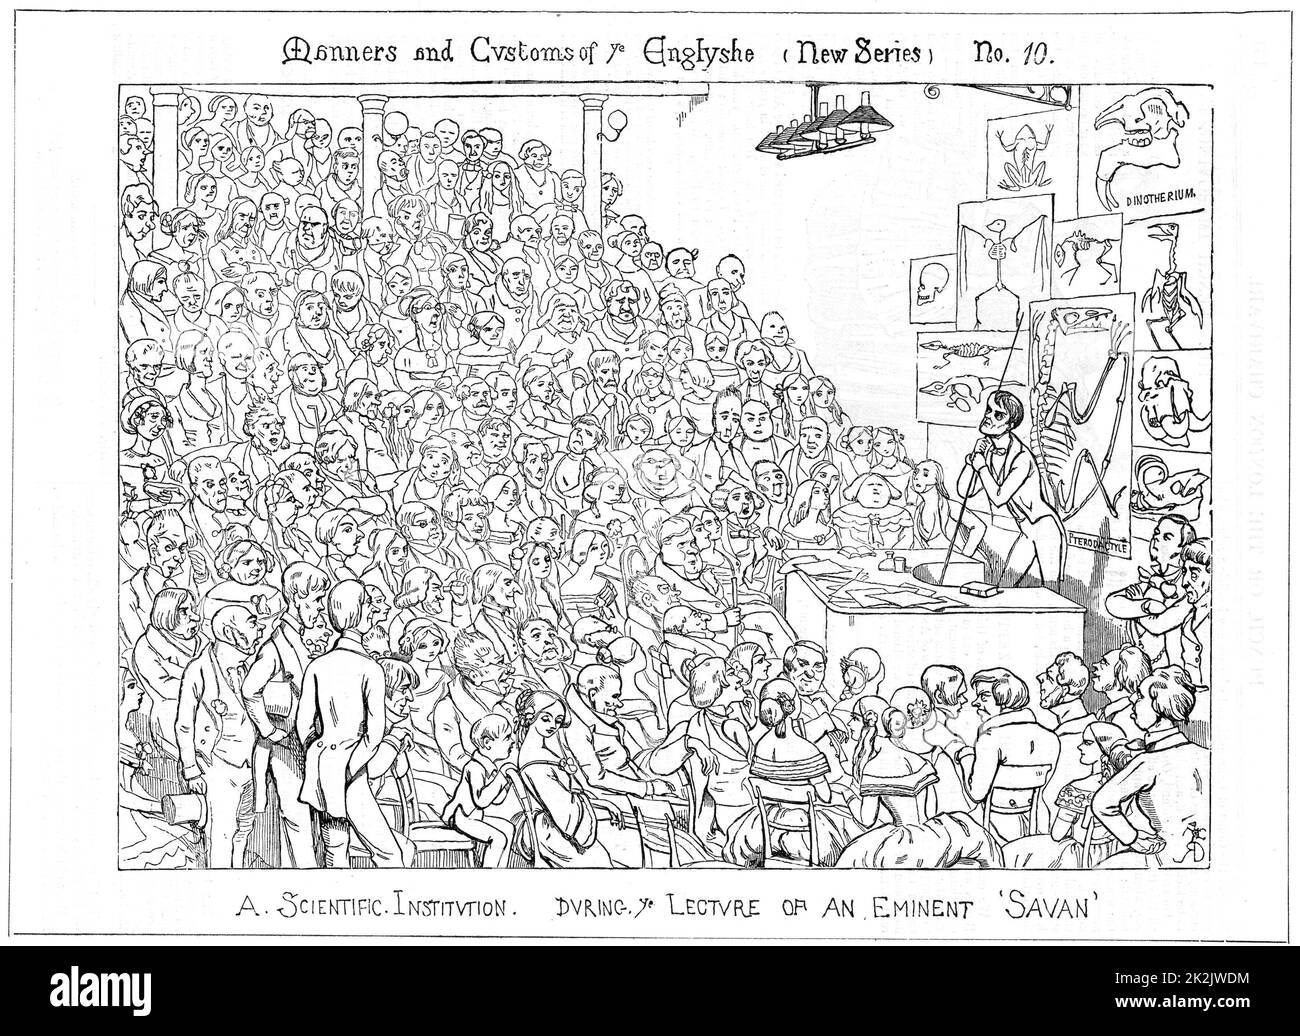 Richard Owen (1804-1892) naturaliste britannique et anatomiste, qui donne vendredi soir un discours sur les fossiles à la Royal institution de Londres. Caricature de Richard Doyle de 'Punch', Londres 1849. Gravure en bois Banque D'Images